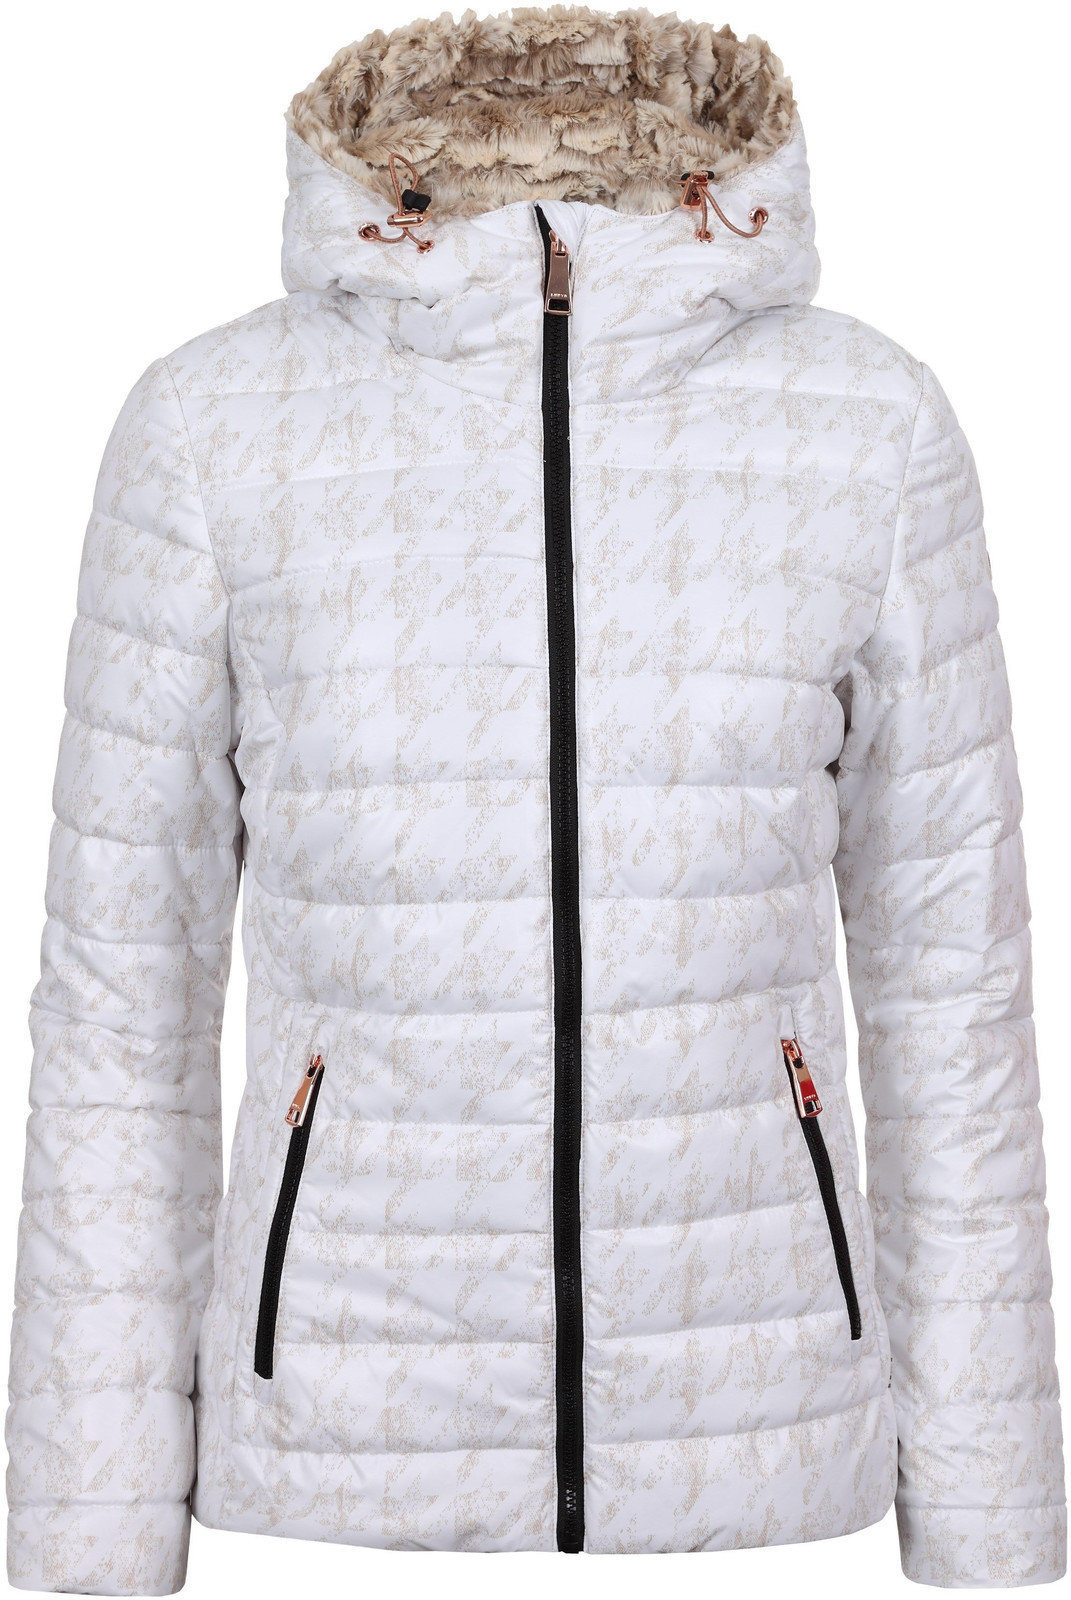 Jachetă schi Luhta Bettina Optic White 38